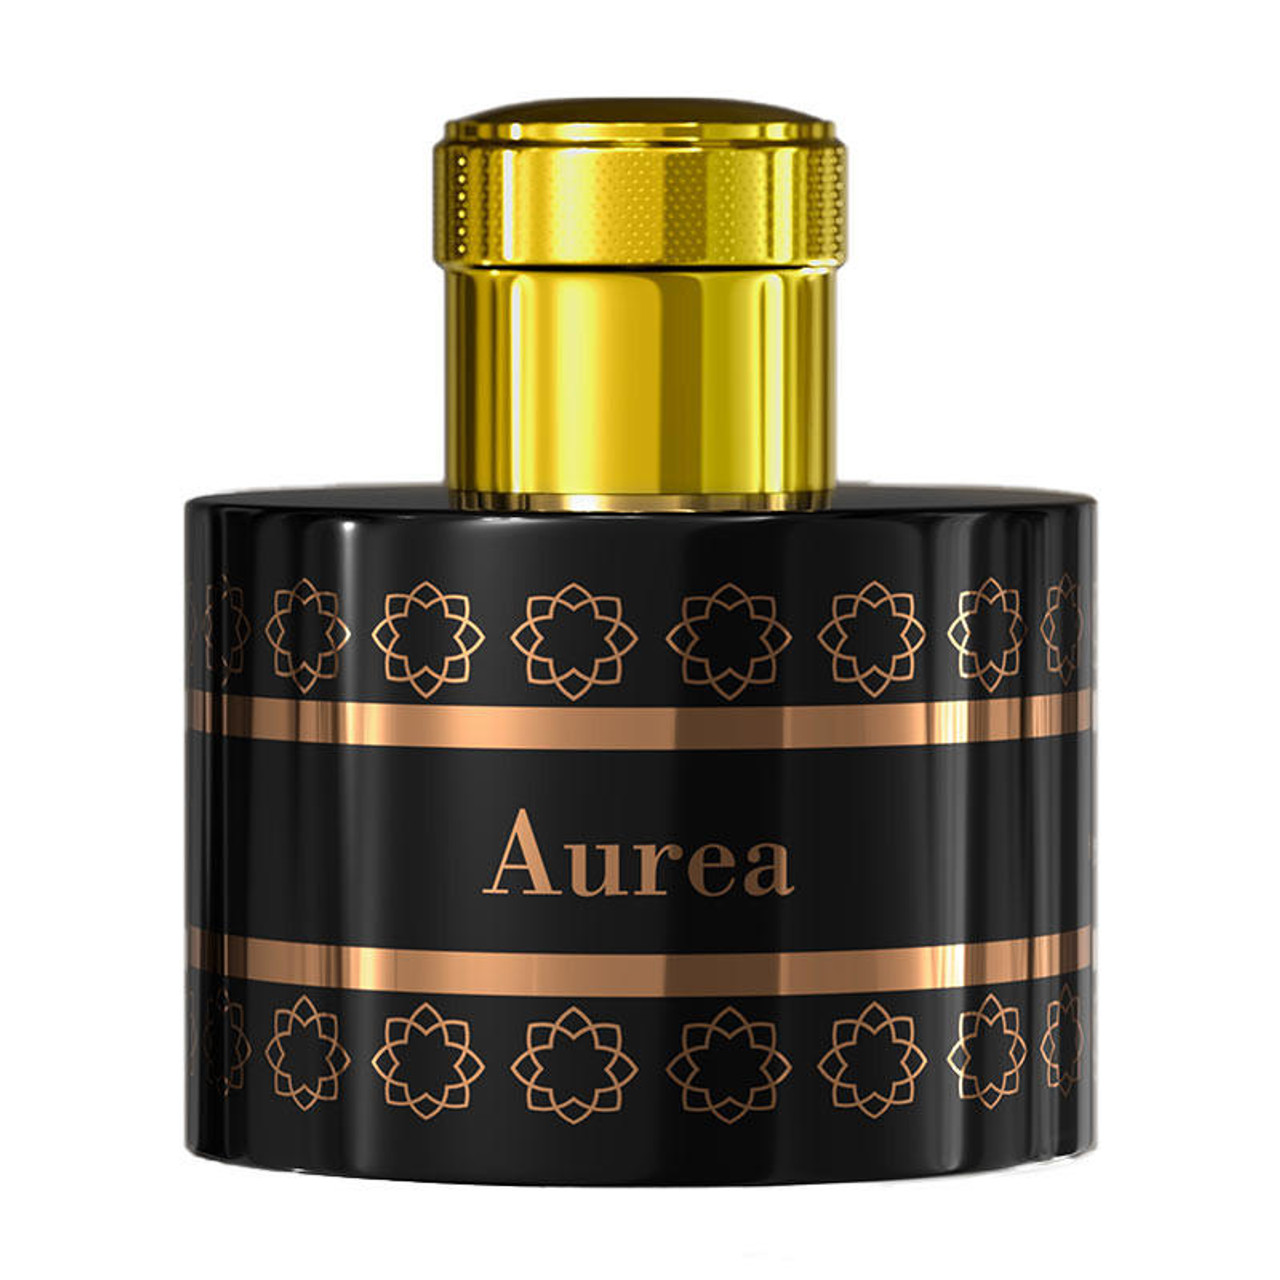 Aurea Pantheon profumo in vendita online